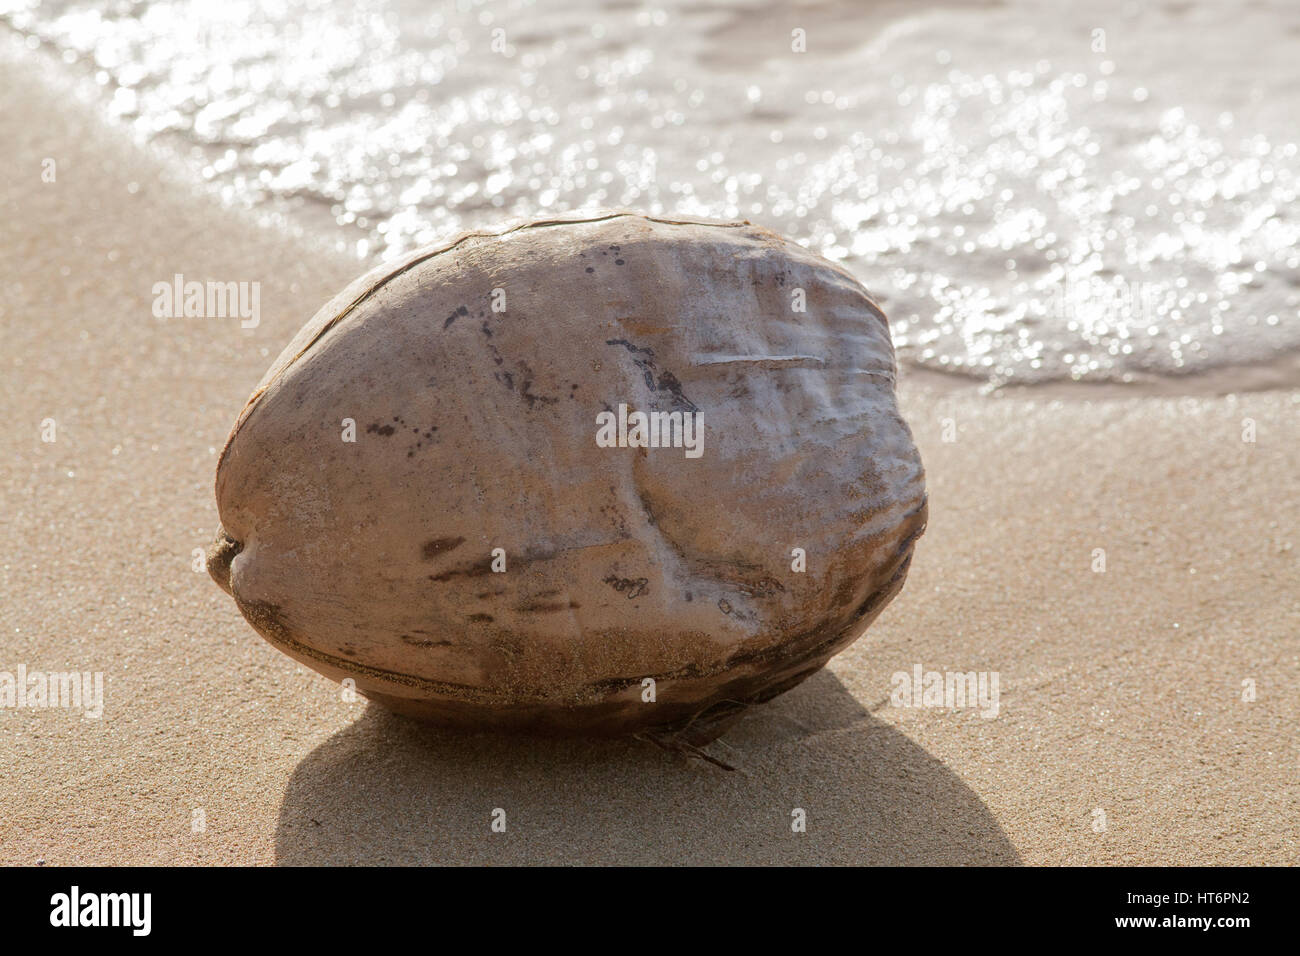 Kokosnuss (Sonftmut Nucifera). Holzige faserige Hartschale mit einem ausgesät Steinfrucht oder Obst. Beispiel für die Samenausbreitung durch Meer Wasser und Welle handeln. Flakes Stockfoto